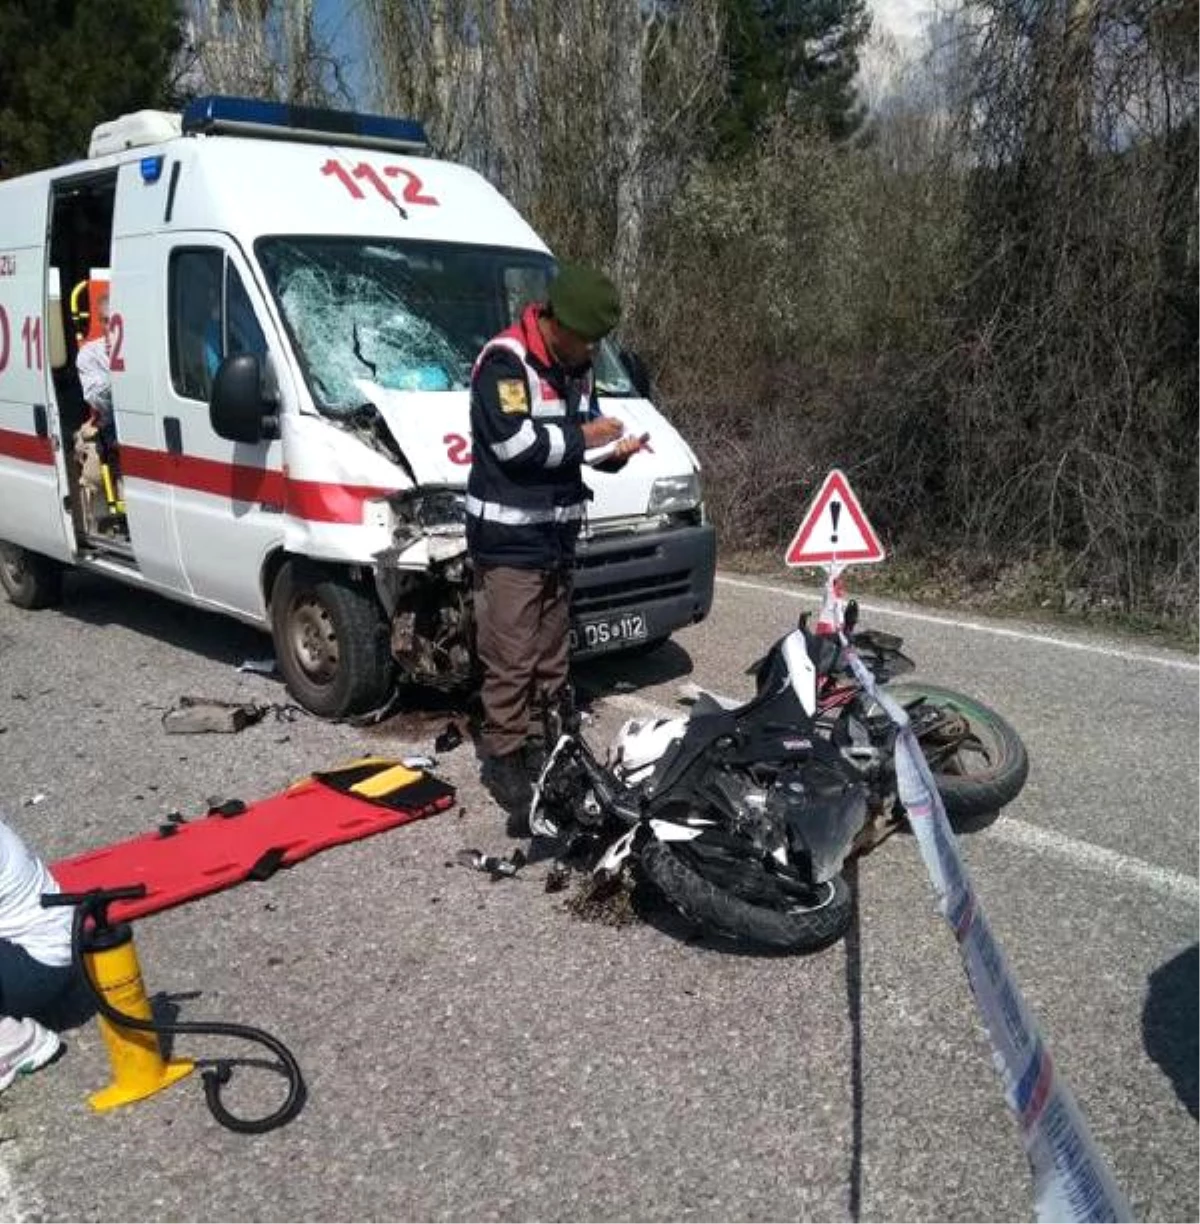 Seçmen Taşıyan Ambulans ile Motosiklet Çarpıştı: 1 Ölü, 1 Yaralı